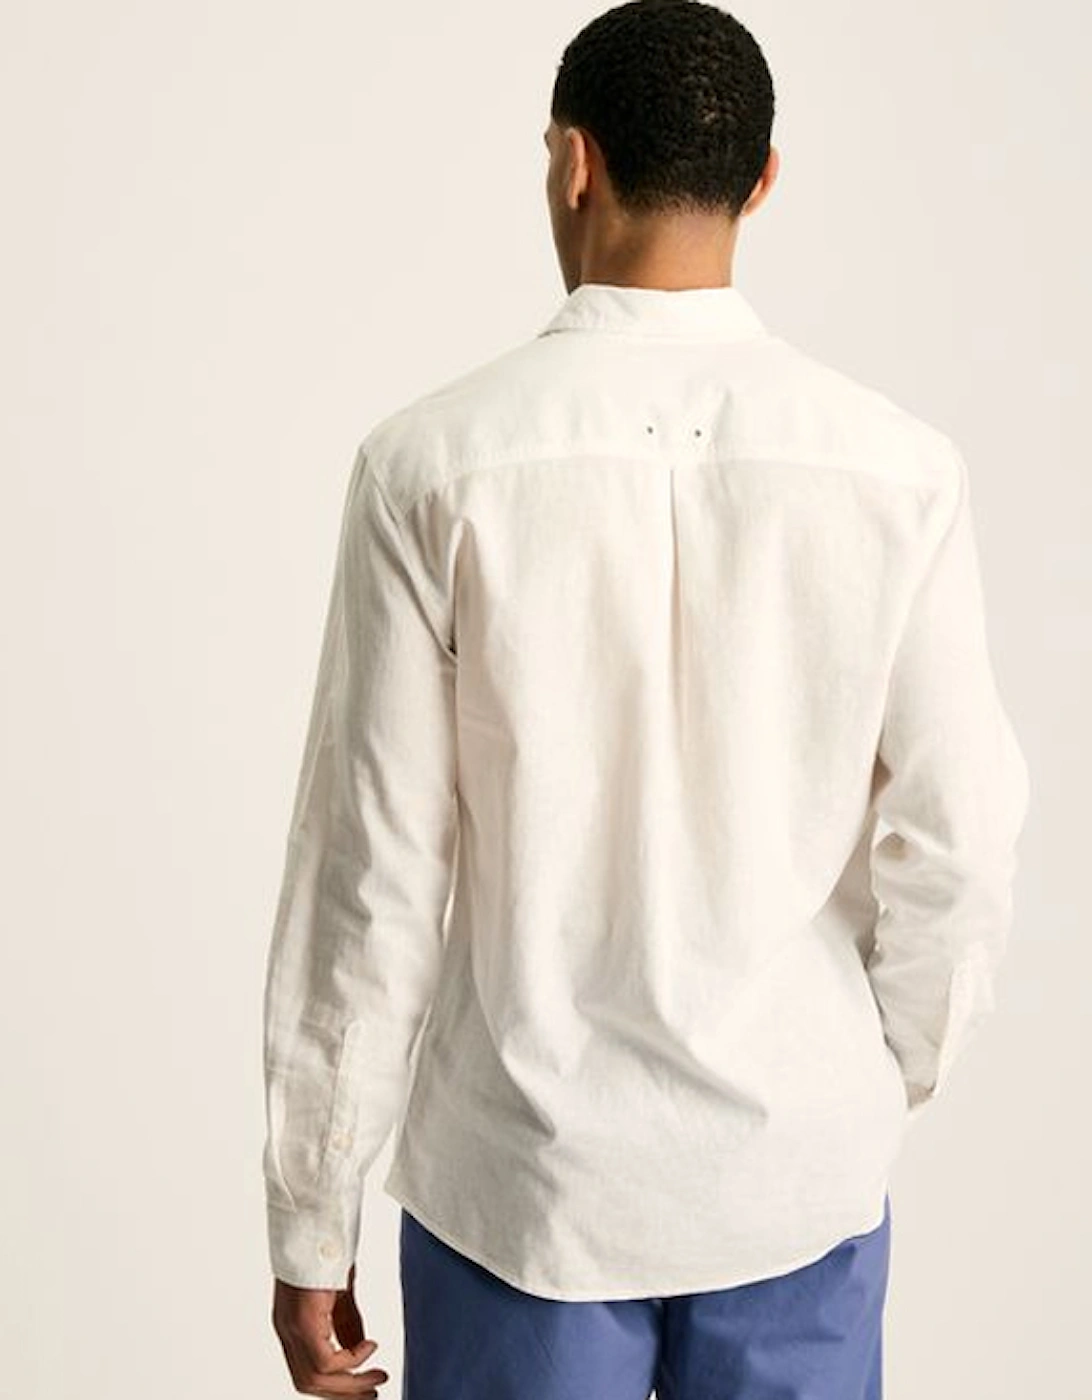 Men's Long Sleeve Linen Shirt White